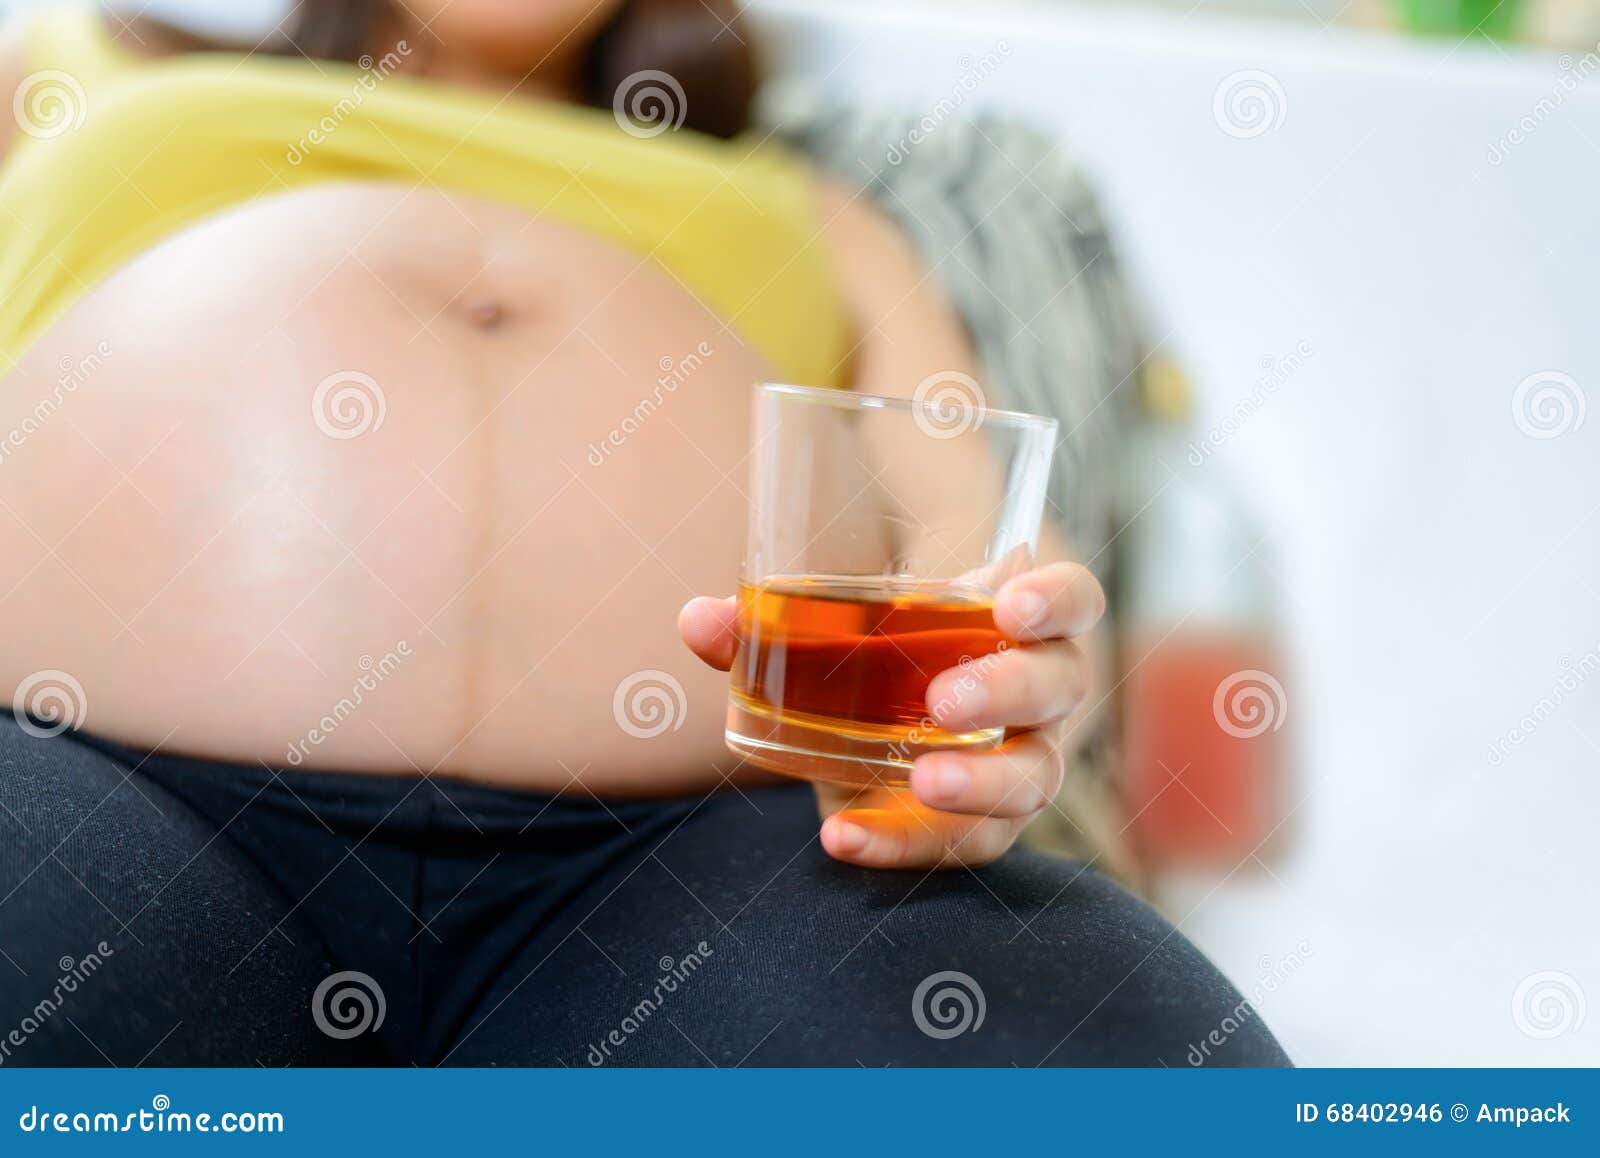 Пить после беременной. Беременные и алкоголь. Алкоголь и беременность. Пиво для беременных женщин.